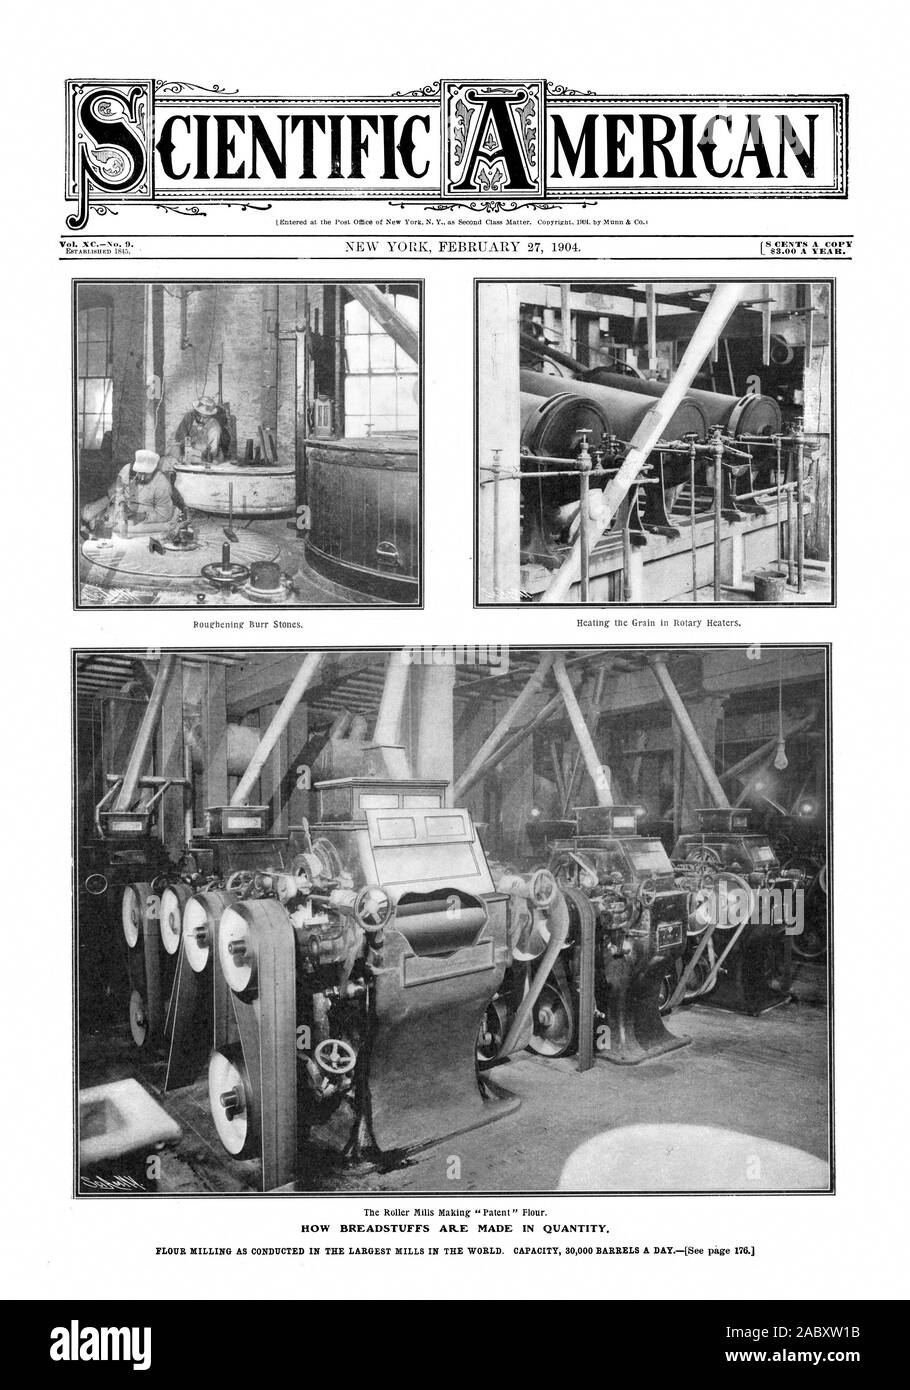 Vol.XeNo. 9. 18 Cents pro Kopie L Moo EIN JAHR. Wie BREADSTUFFS SIND IN QUANTITÄT., Scientific American, 1904-02-27 Stockfoto